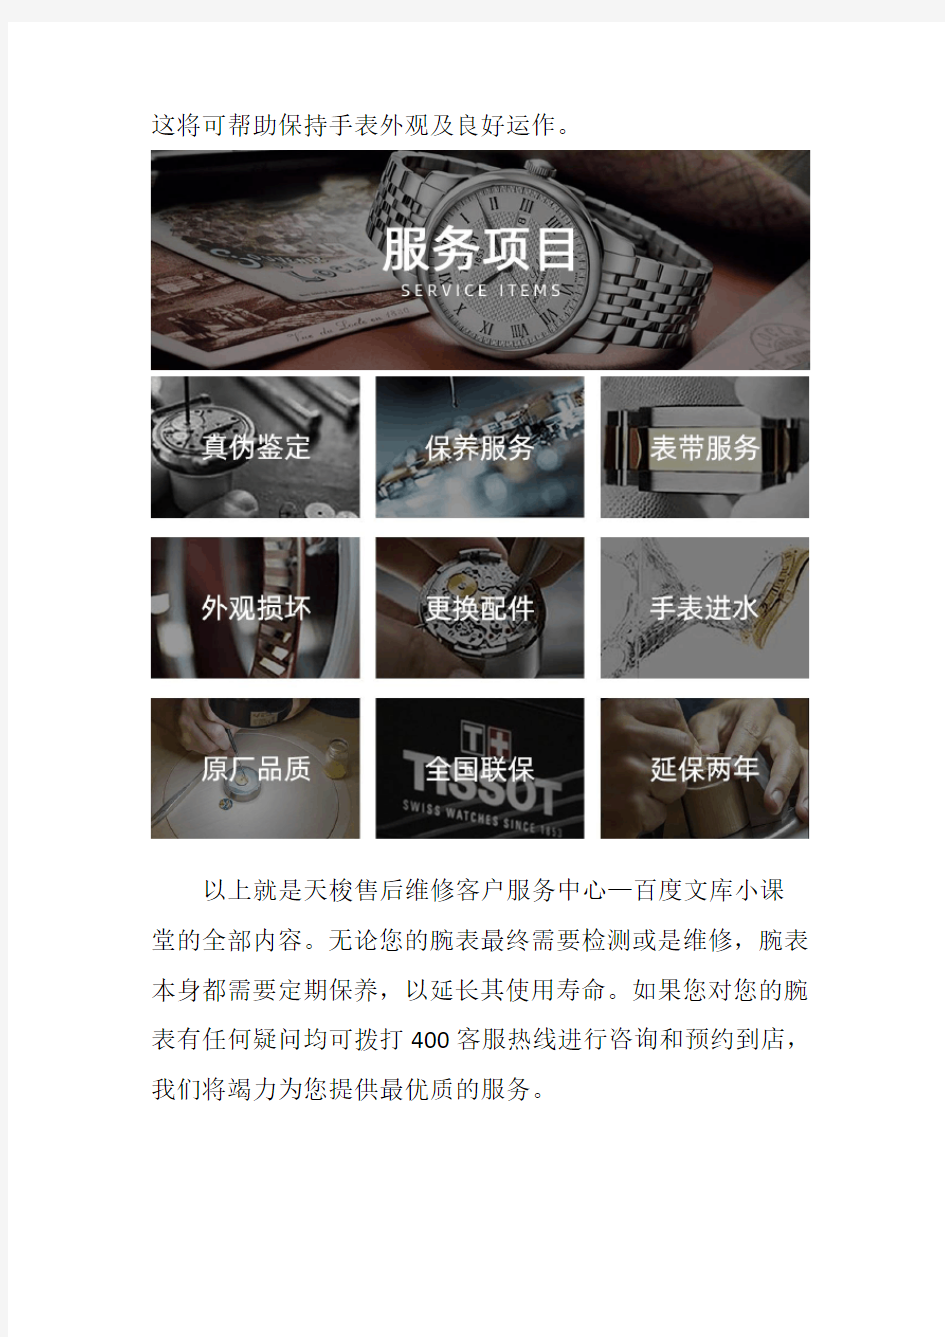 南京天梭手表售后维修服务中心-- 天梭手表的保养都有哪些内容